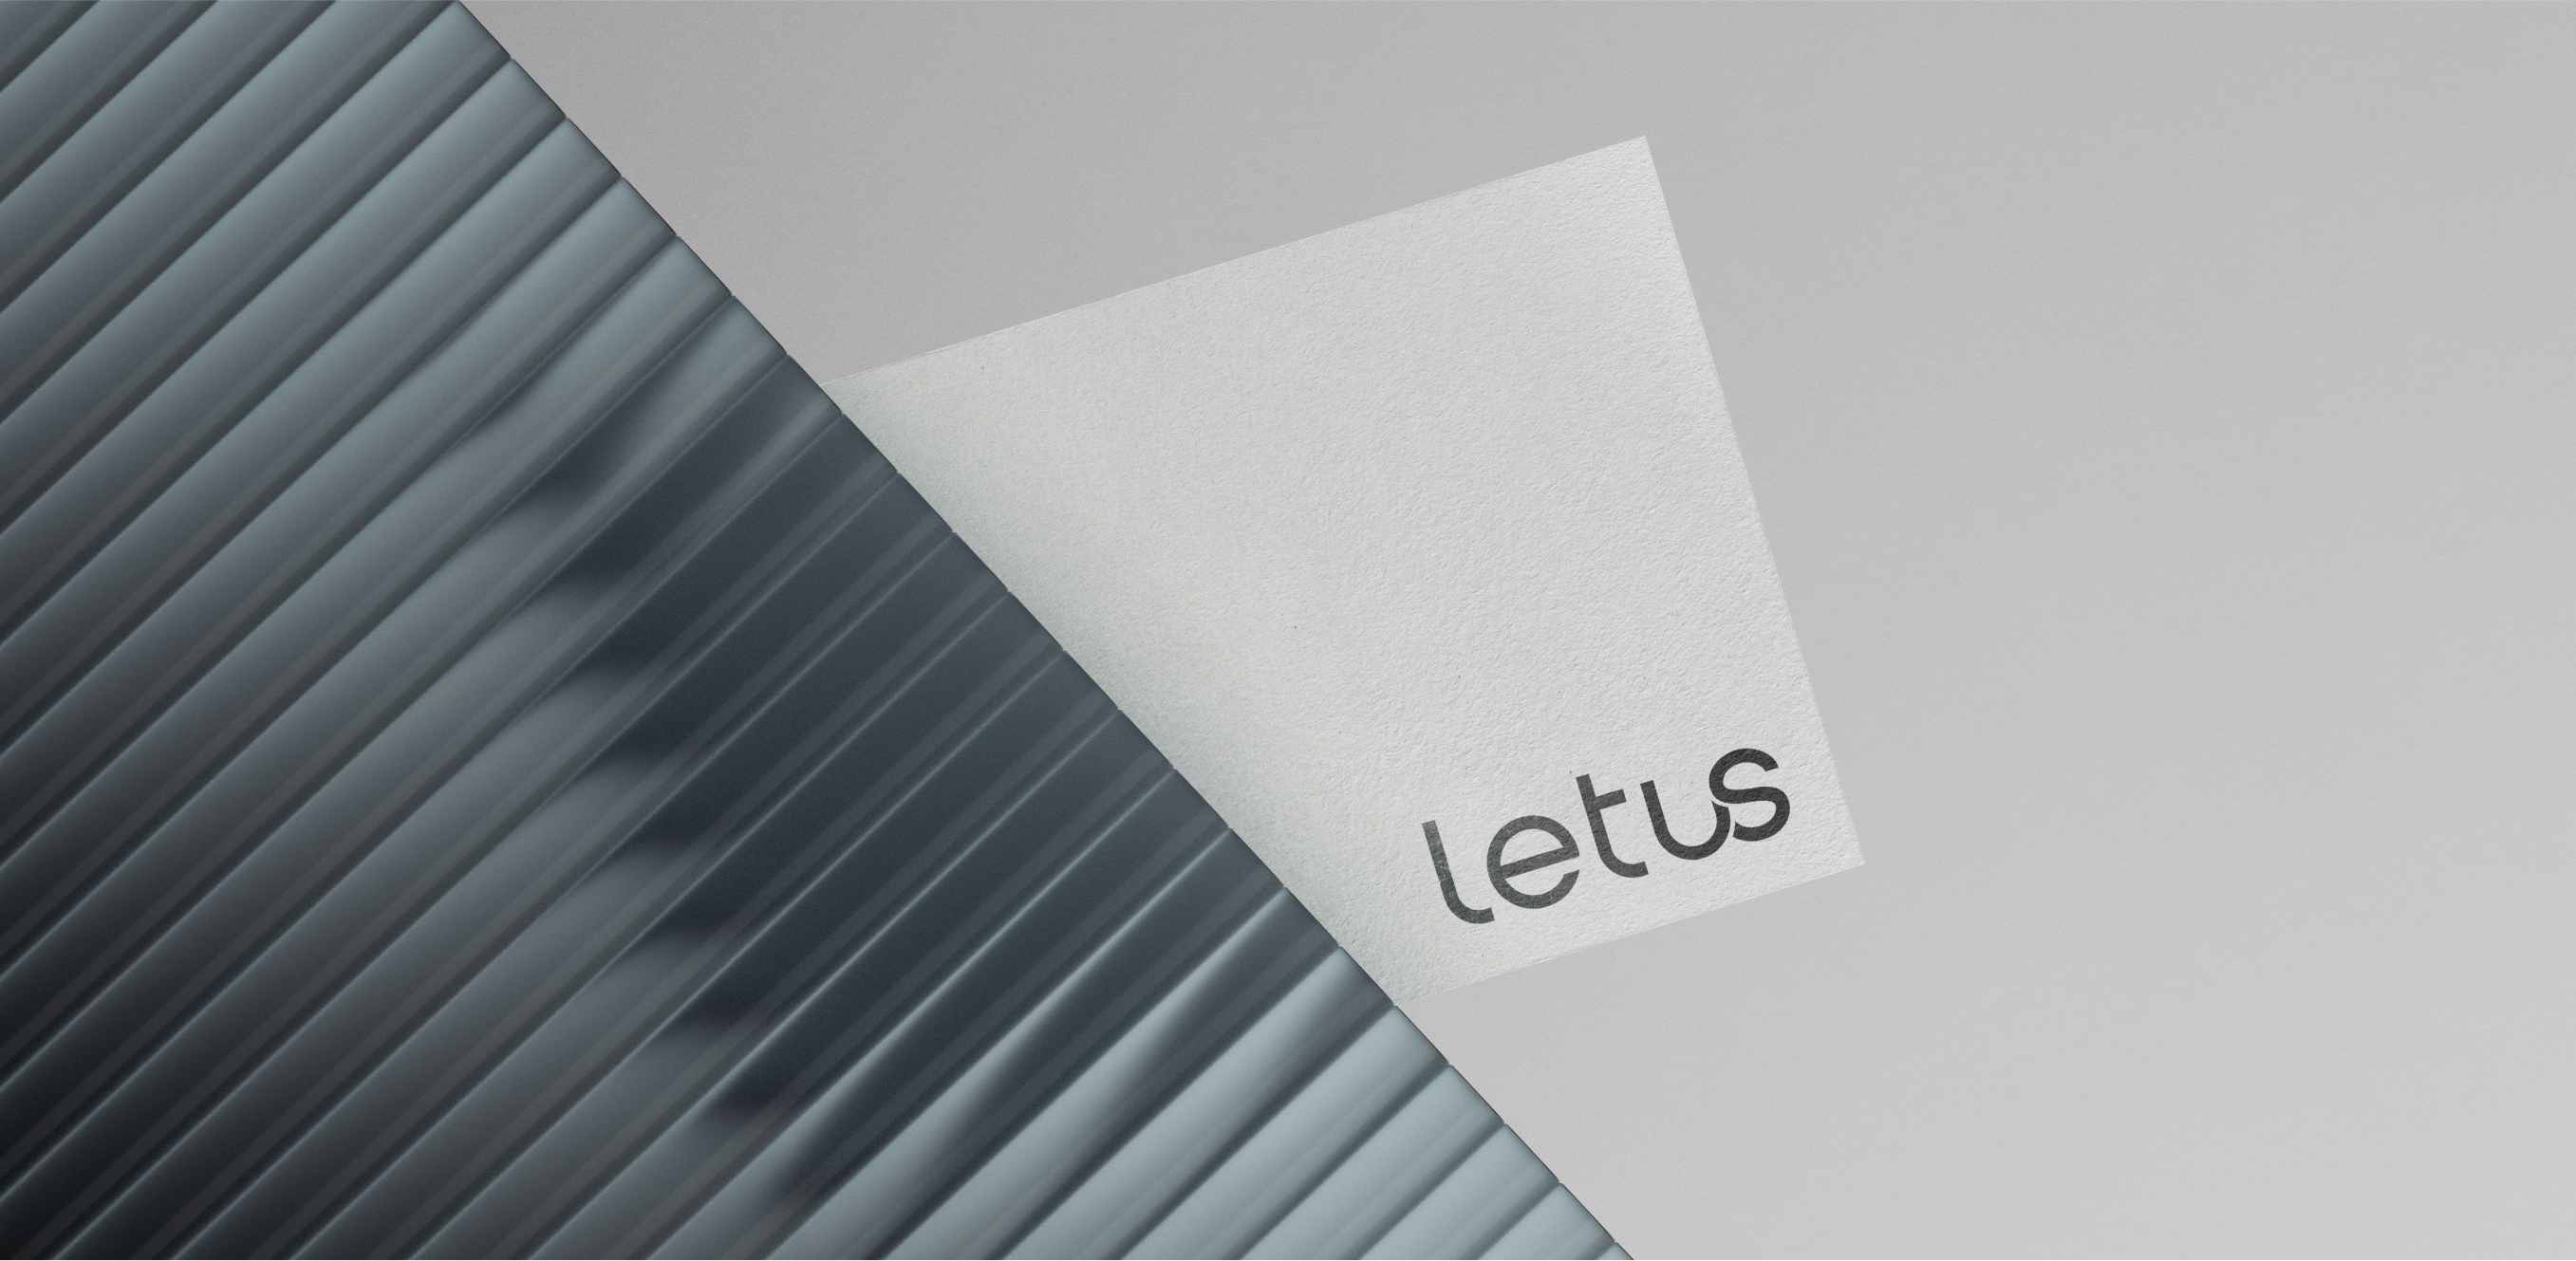 Image branding Letus